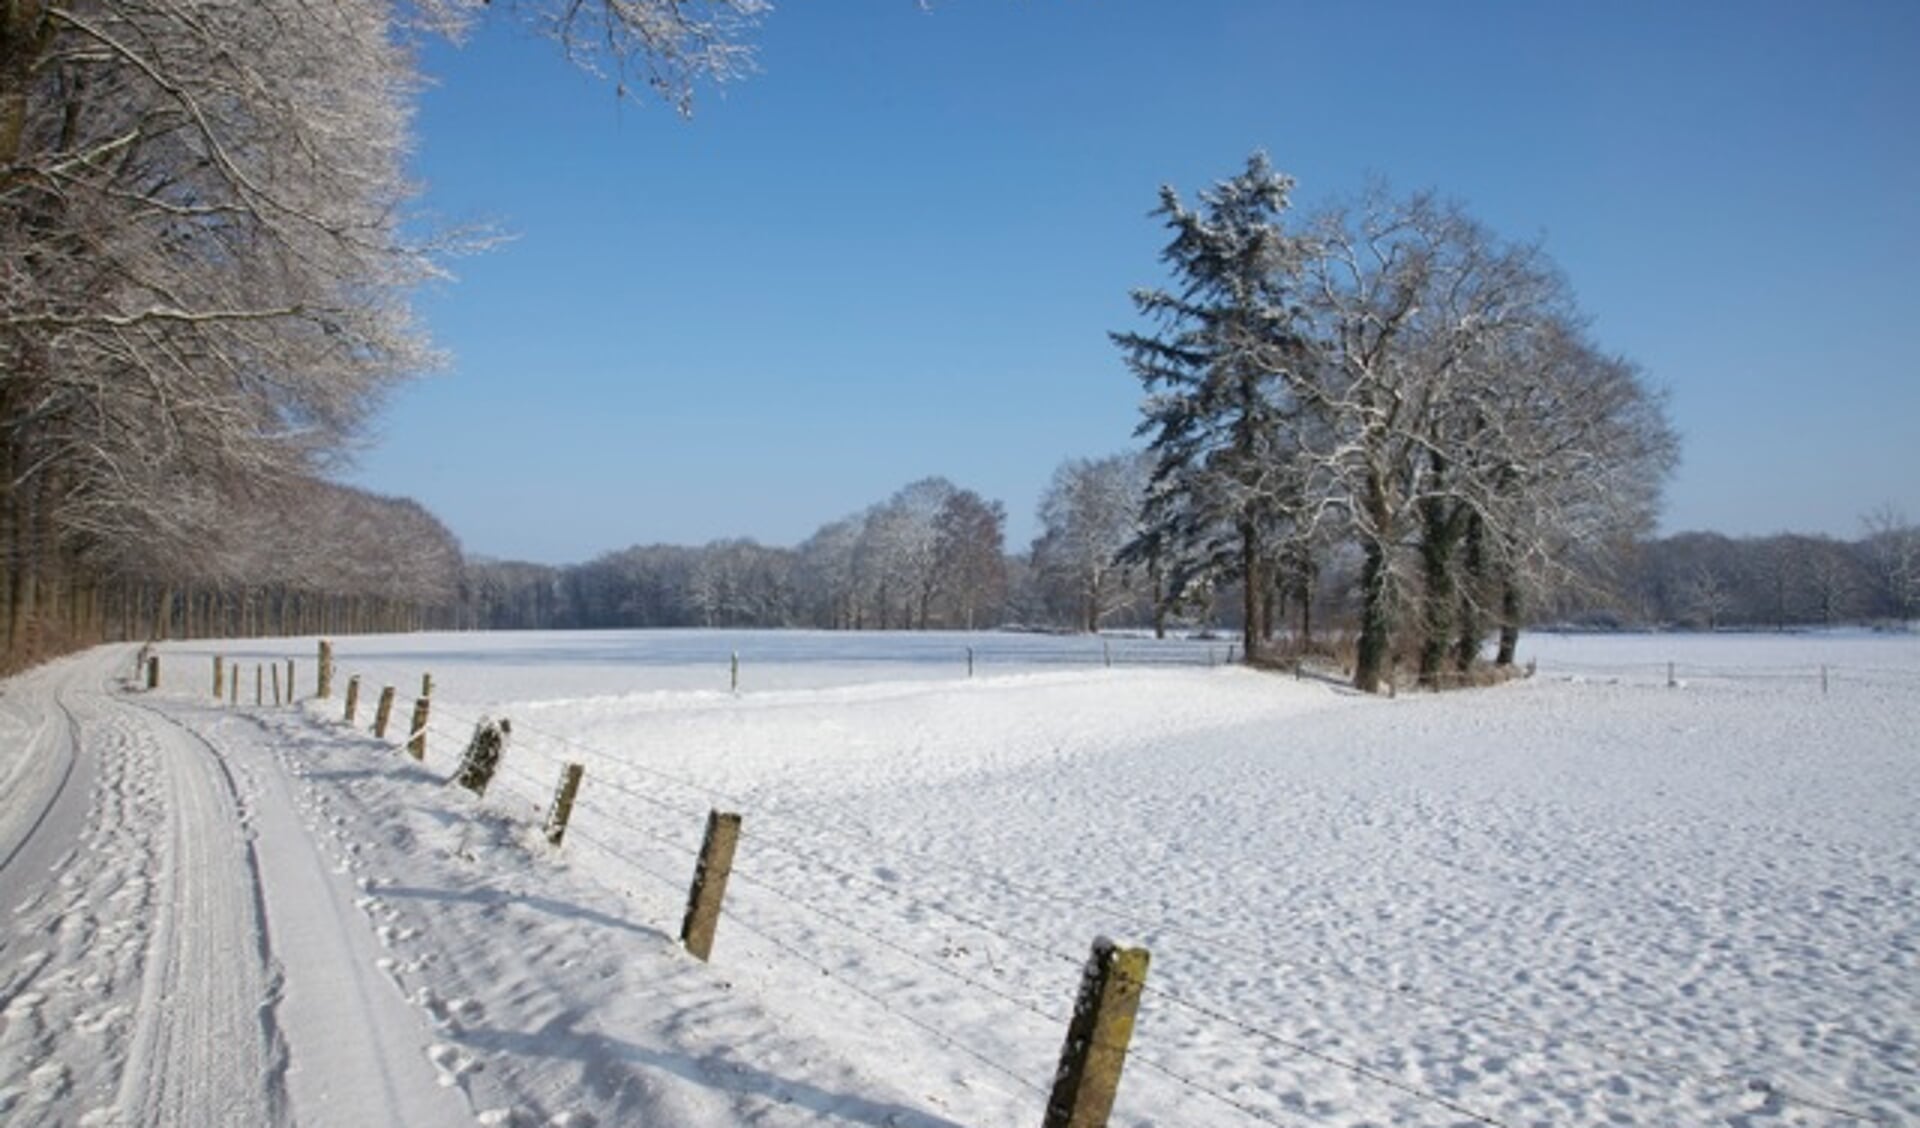 Wandelen door het winterse landschap rondom Vragender. Foto: PR